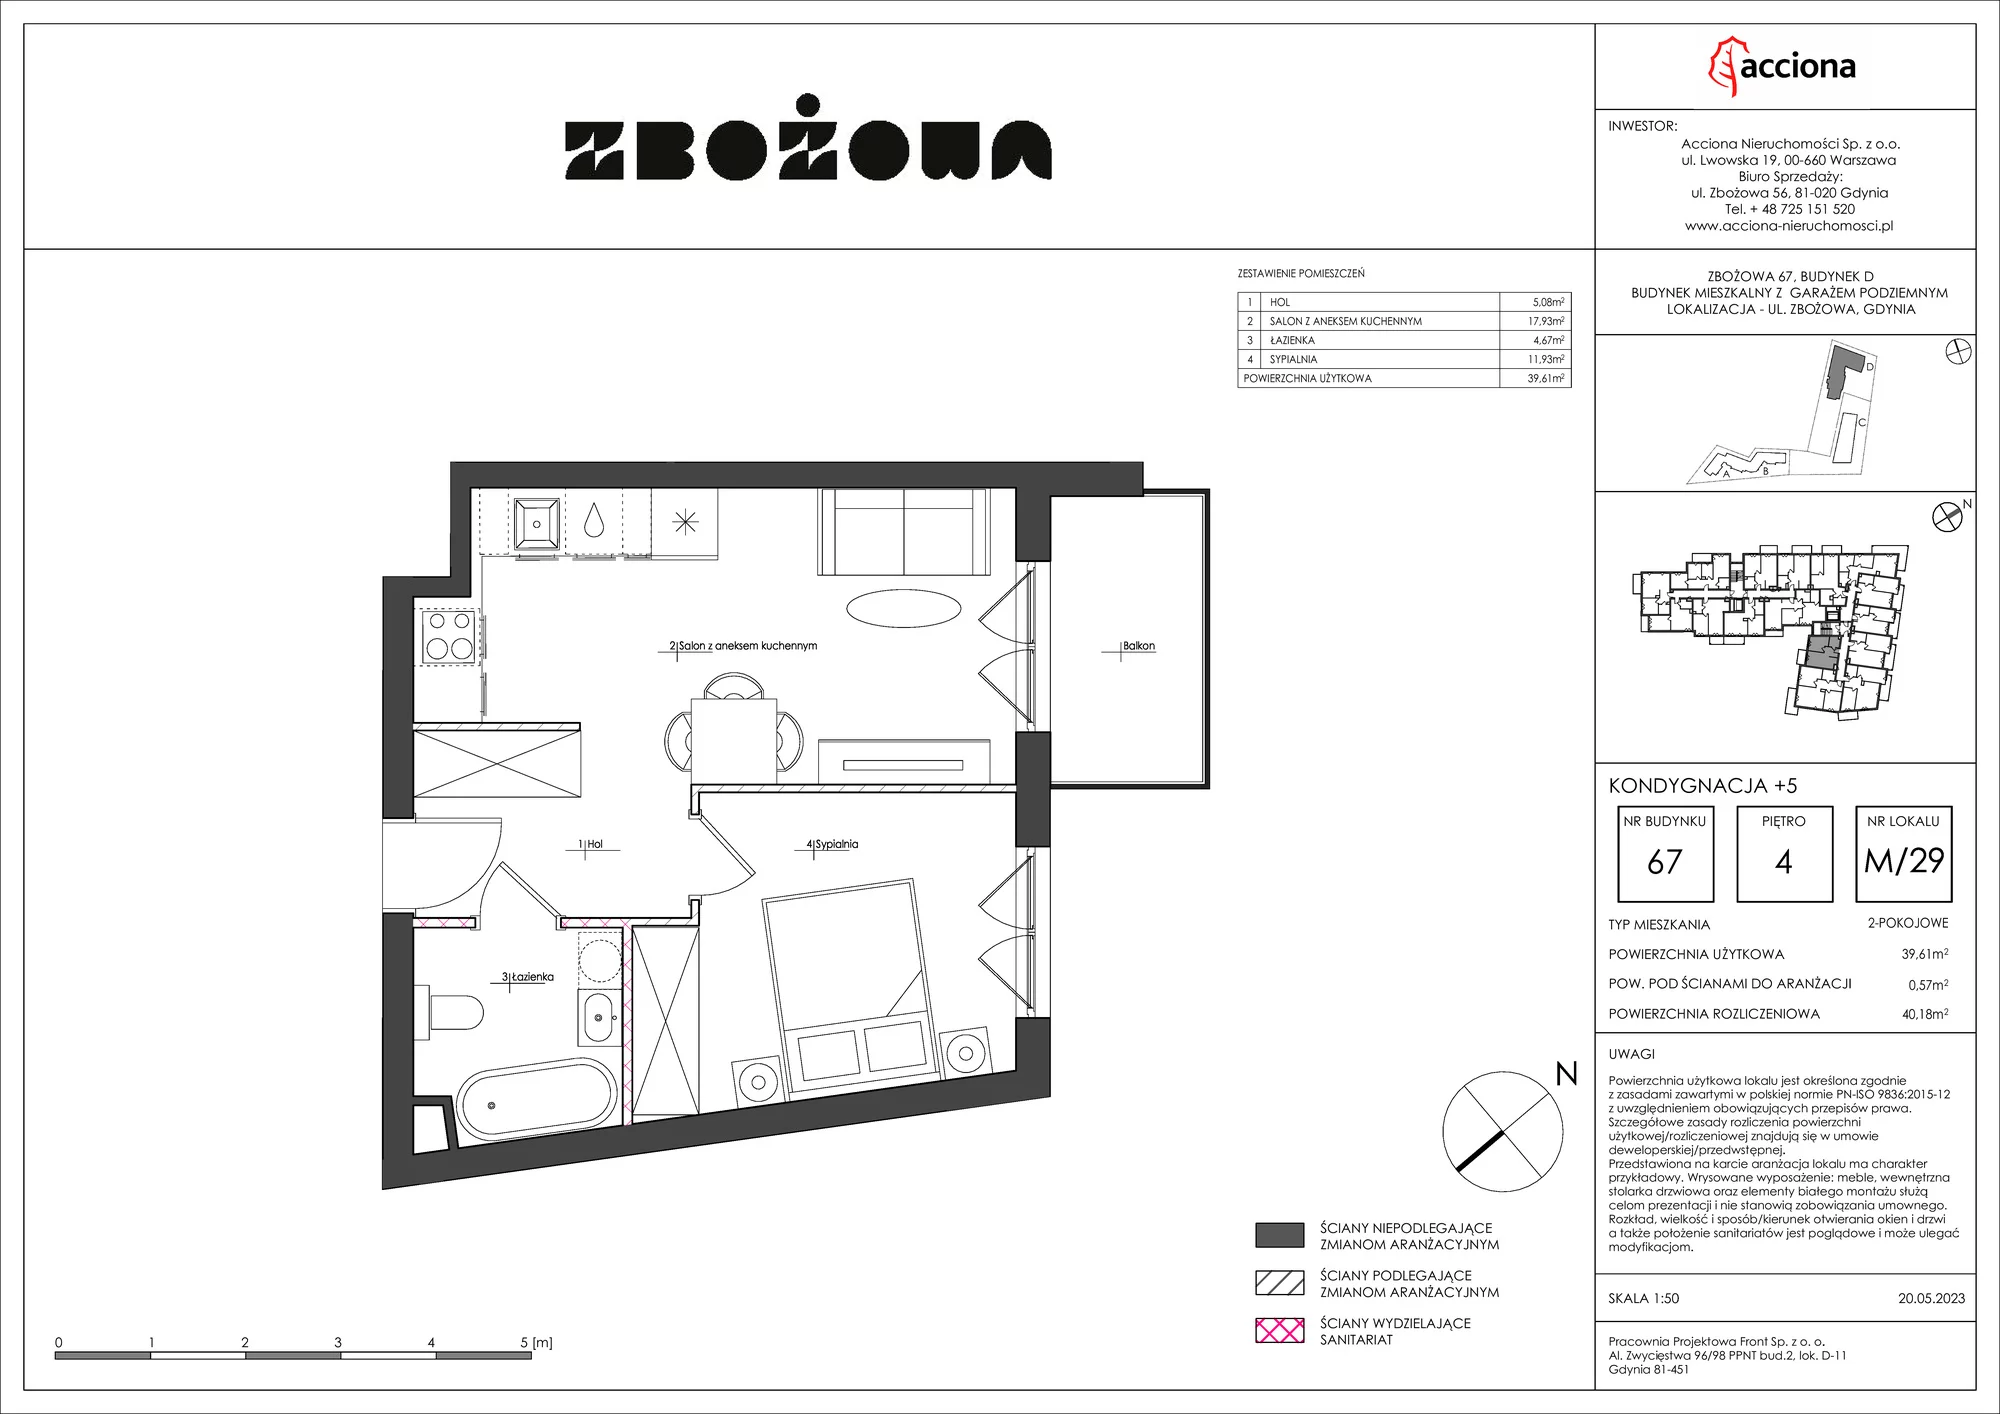 Mieszkanie 40,18 m², piętro 4, oferta nr 67.29, Zbożowa, Gdynia, Cisowa, ul. Zbożowa